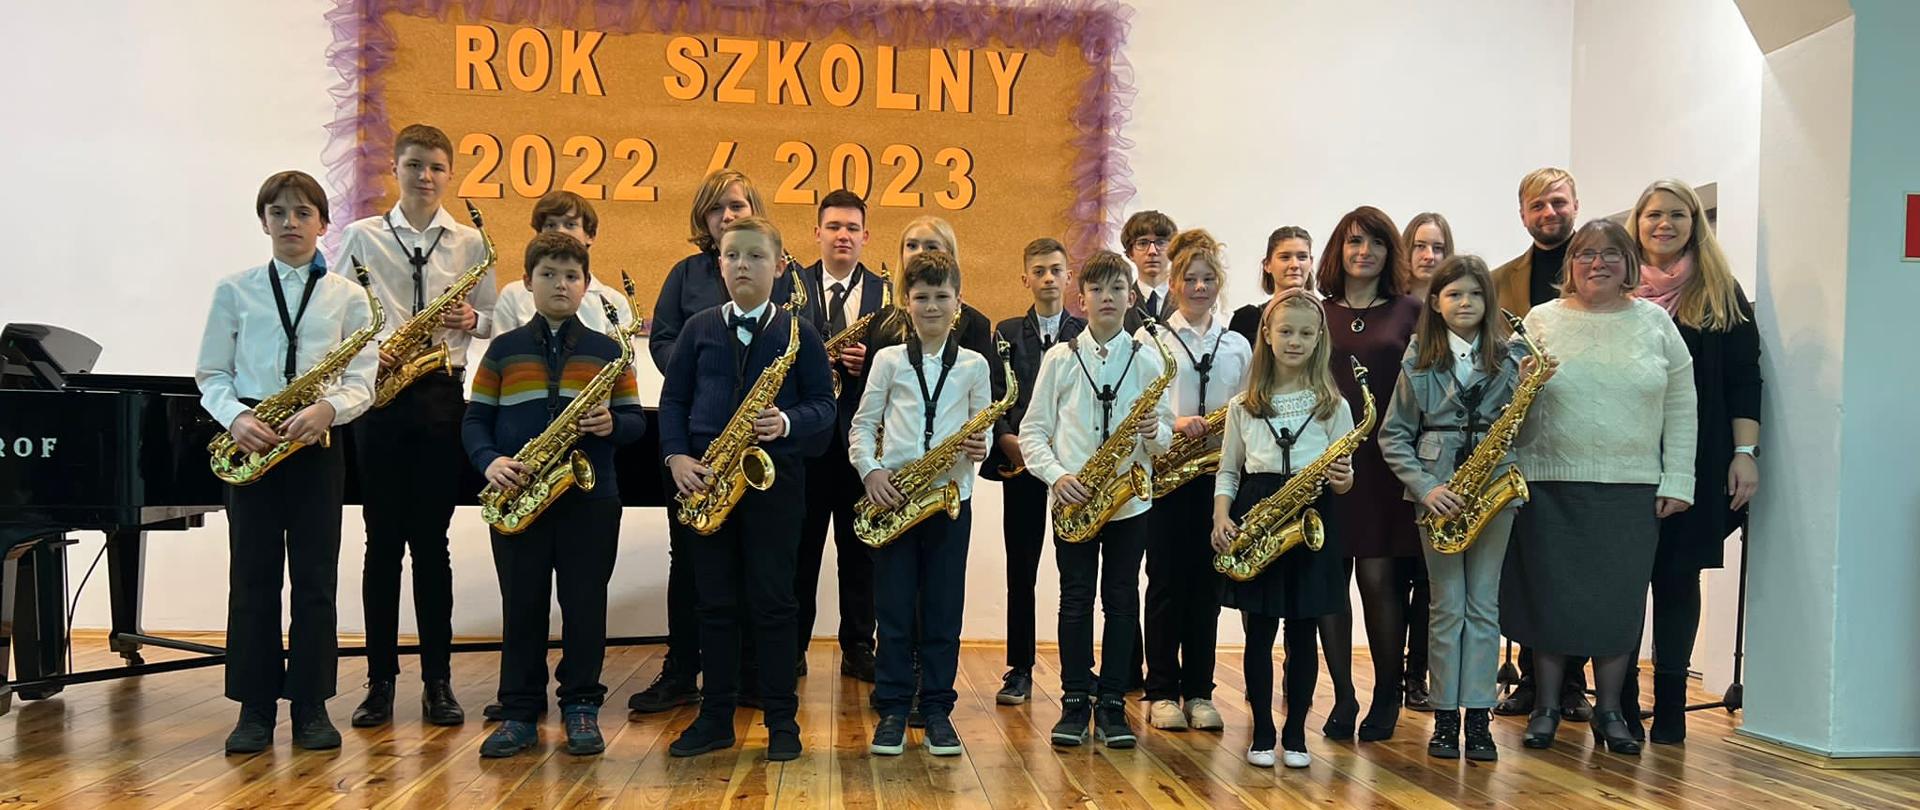 Saksofoniści wraz z nauczycielami na scenie